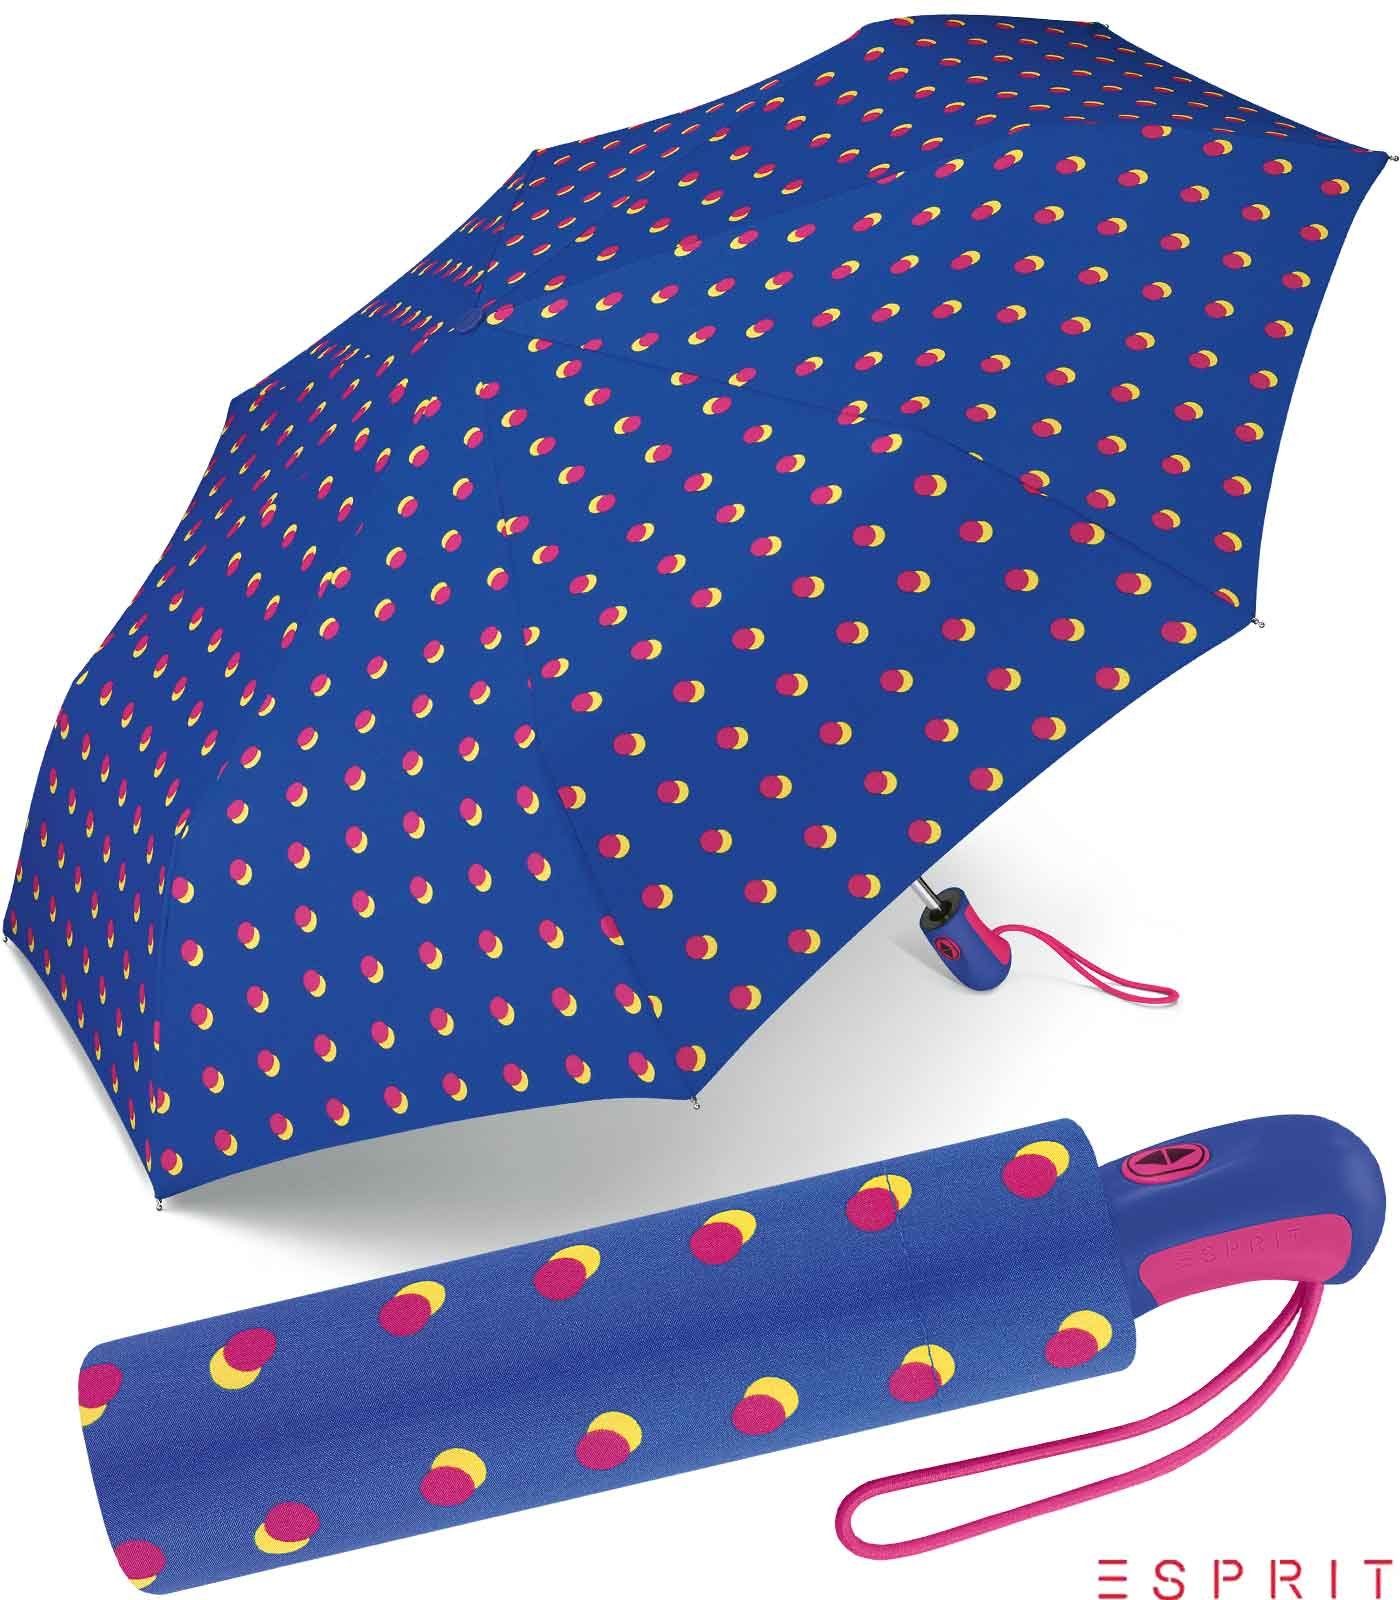 Esprit Taschenregenschirm schöner Schirm für Damen mit Auf-Zu Automatik, das besondere Design als Eyecatcher blau